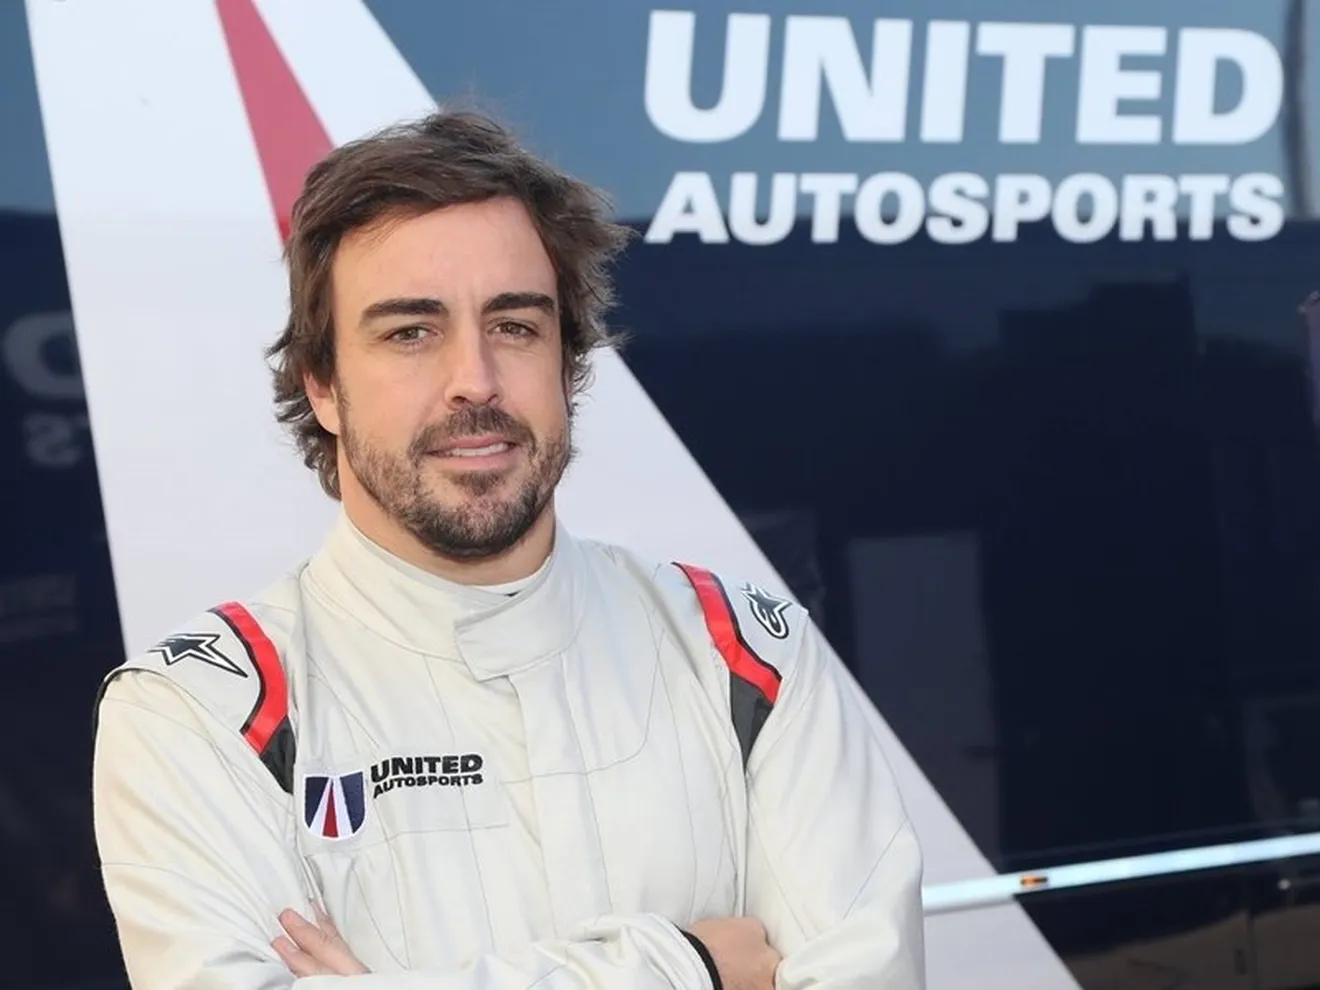 [Vídeo] Alonso y United Autosports, flechazo en el primer test: "Ha sido impresionante"